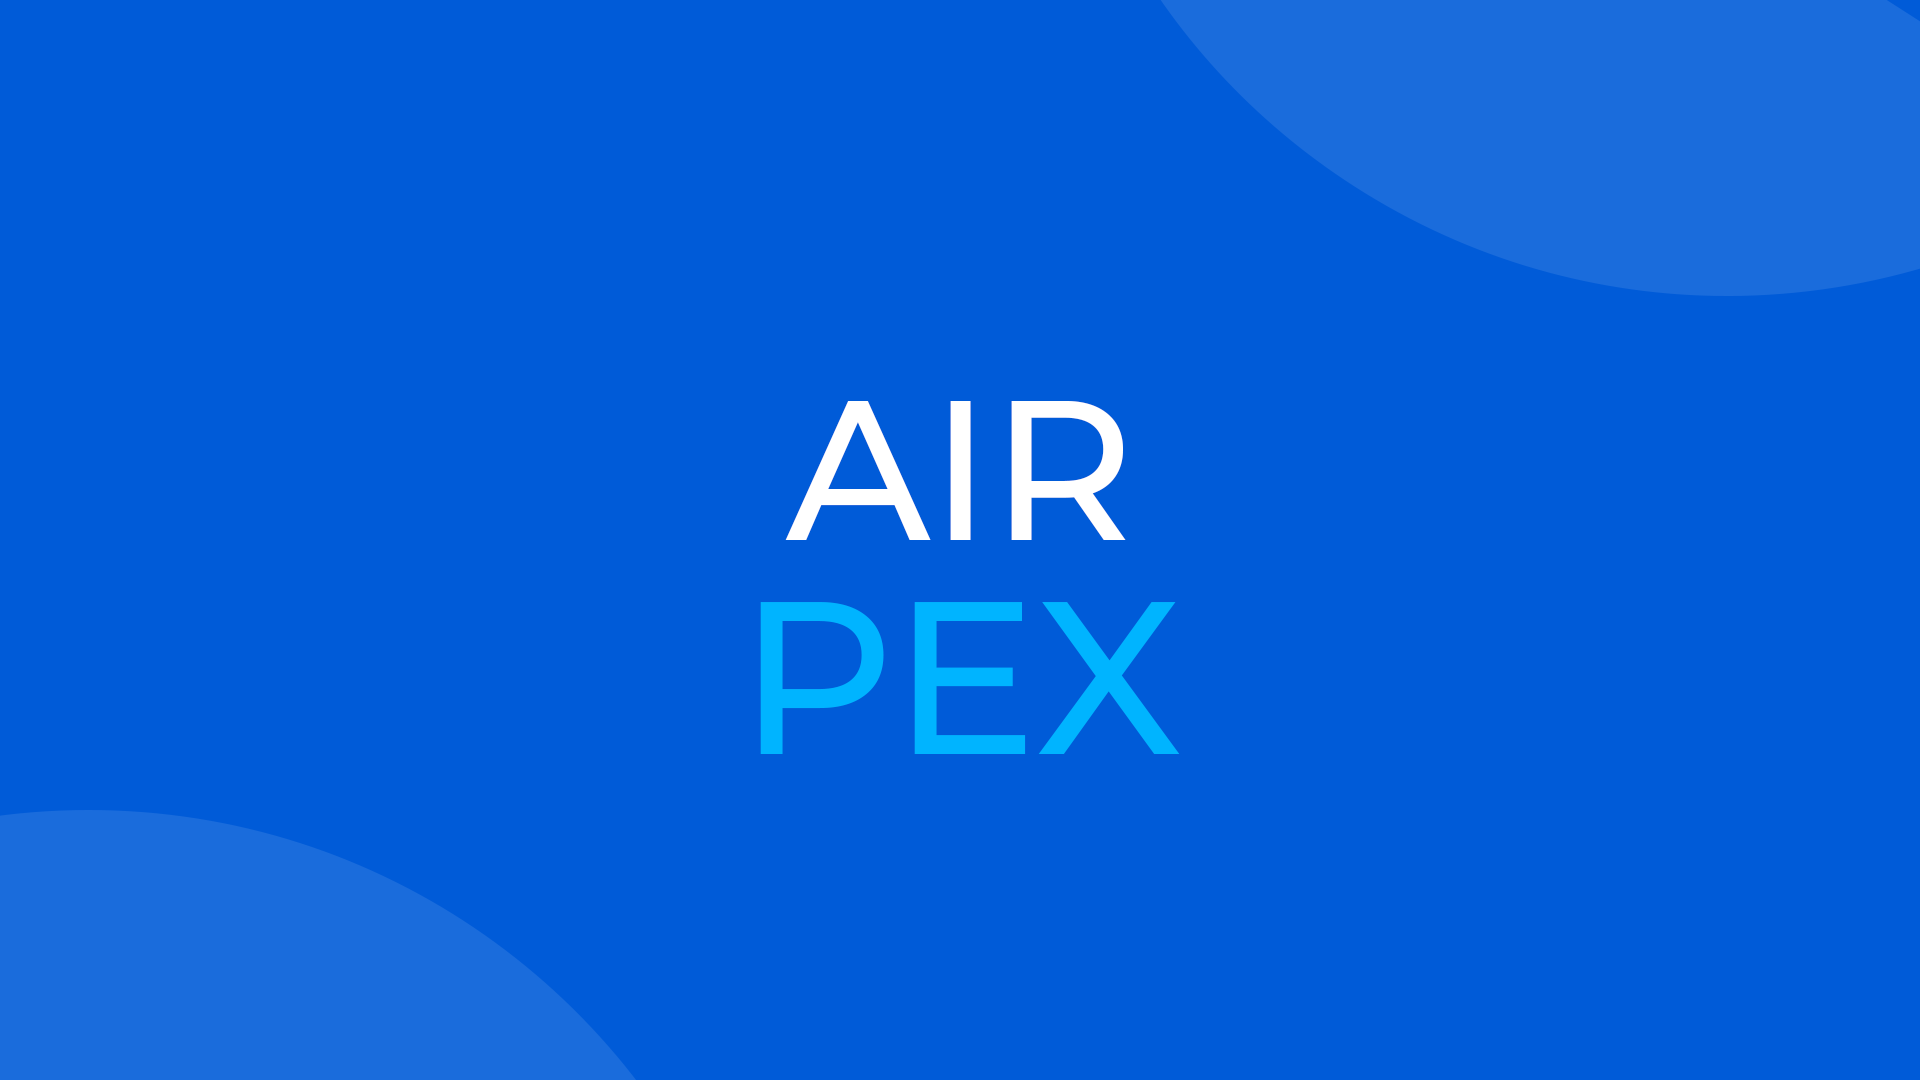 Сравнение популярных апекслокаторов с AirPex